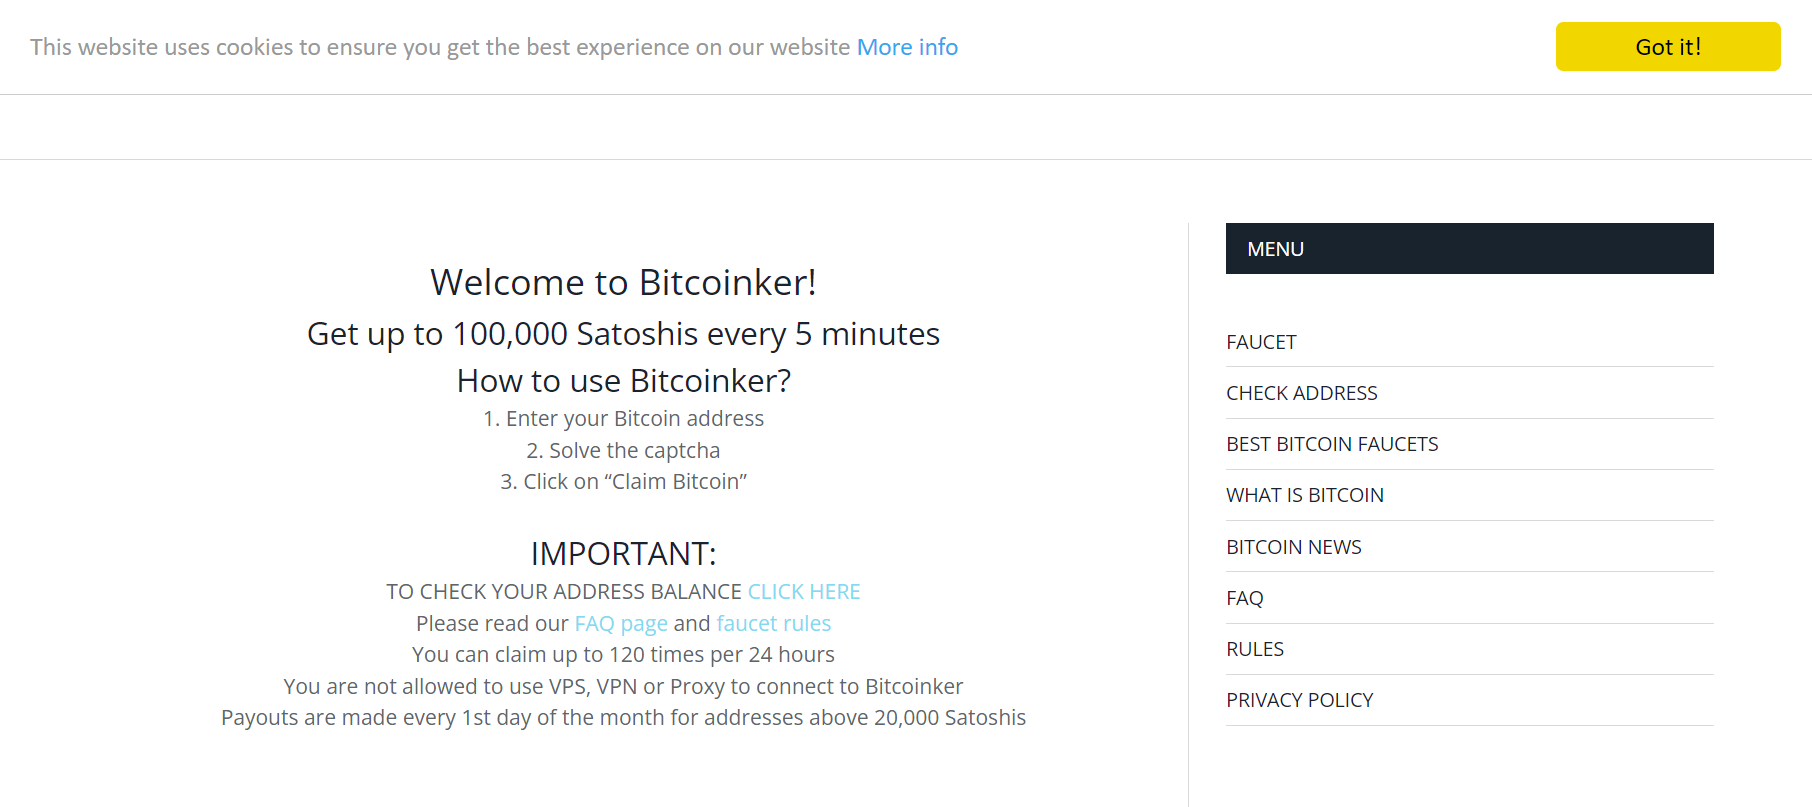 Bitcoinker.com